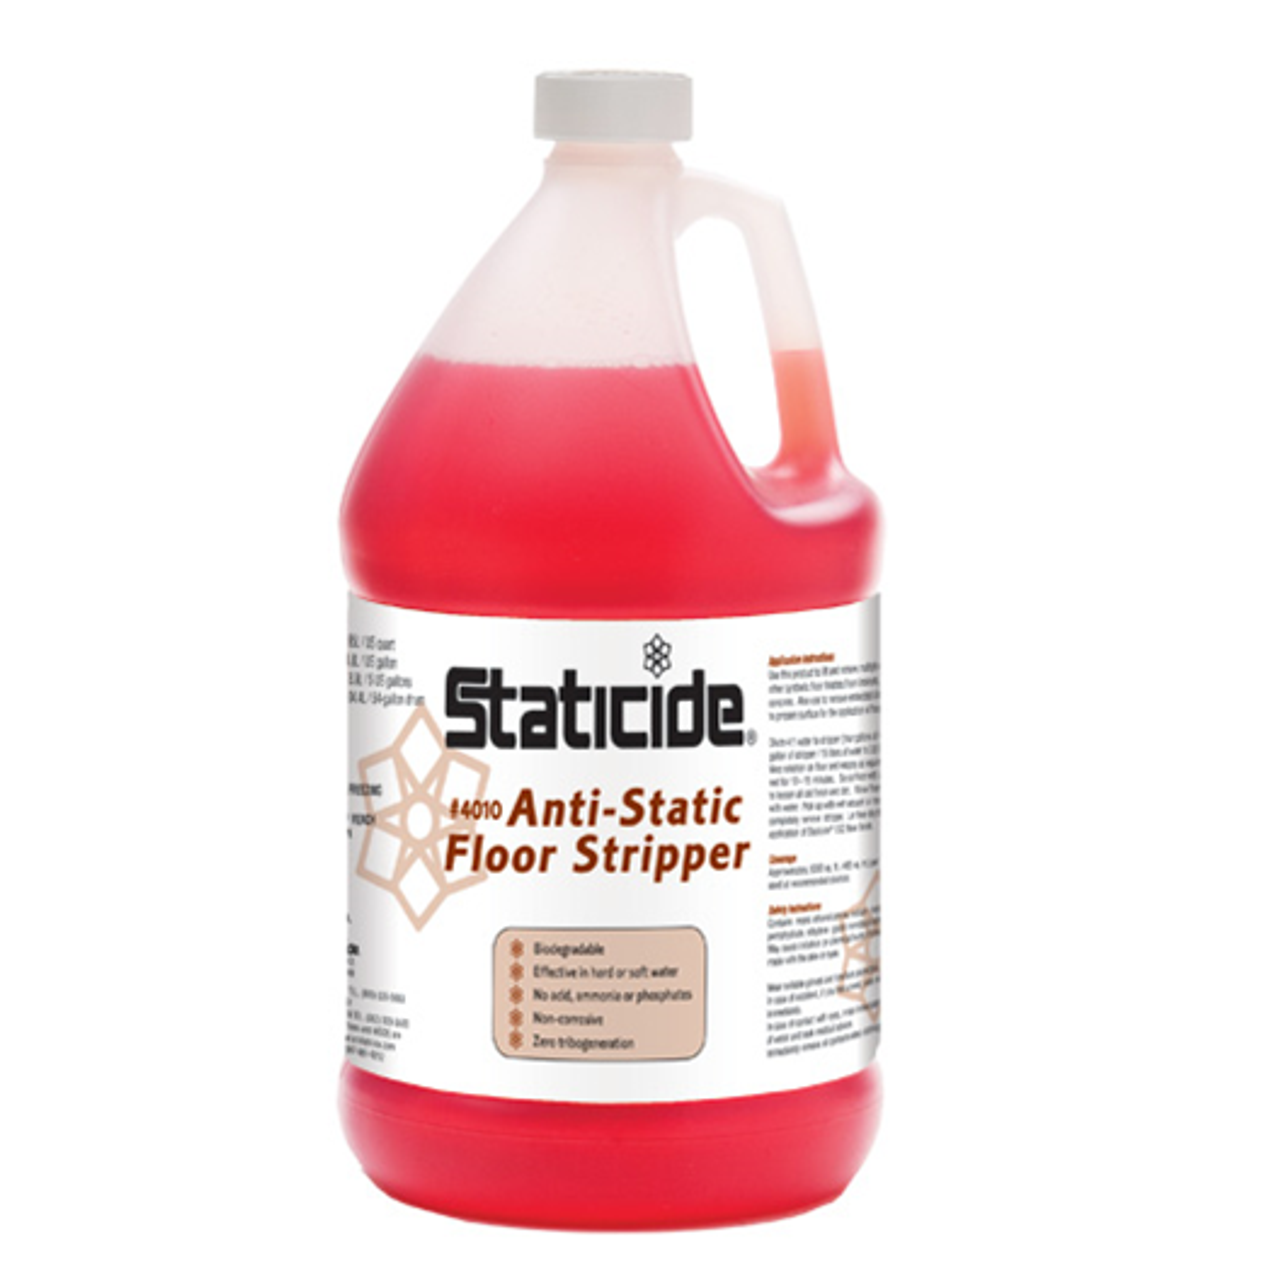 Staticide Anti-Static Floor Stripper (1 Gallon/Case of 4)